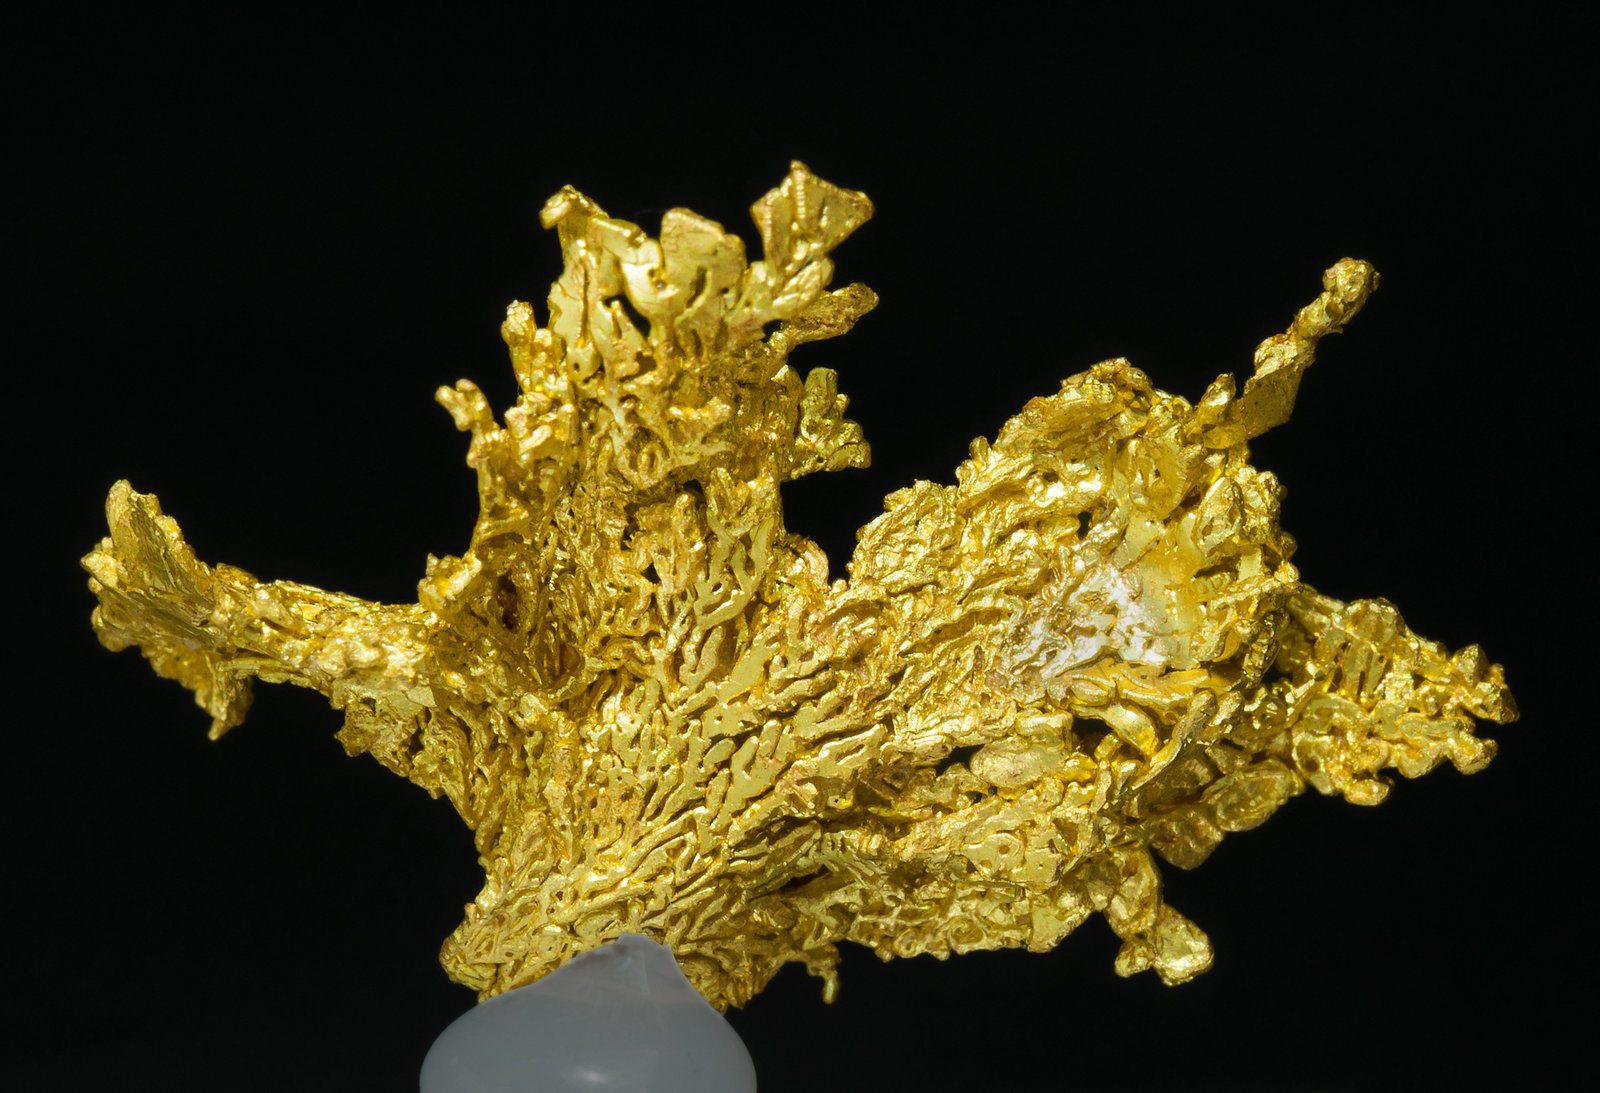 specimens/s_imagesZ3/Gold-TQ46Z3r.jpg